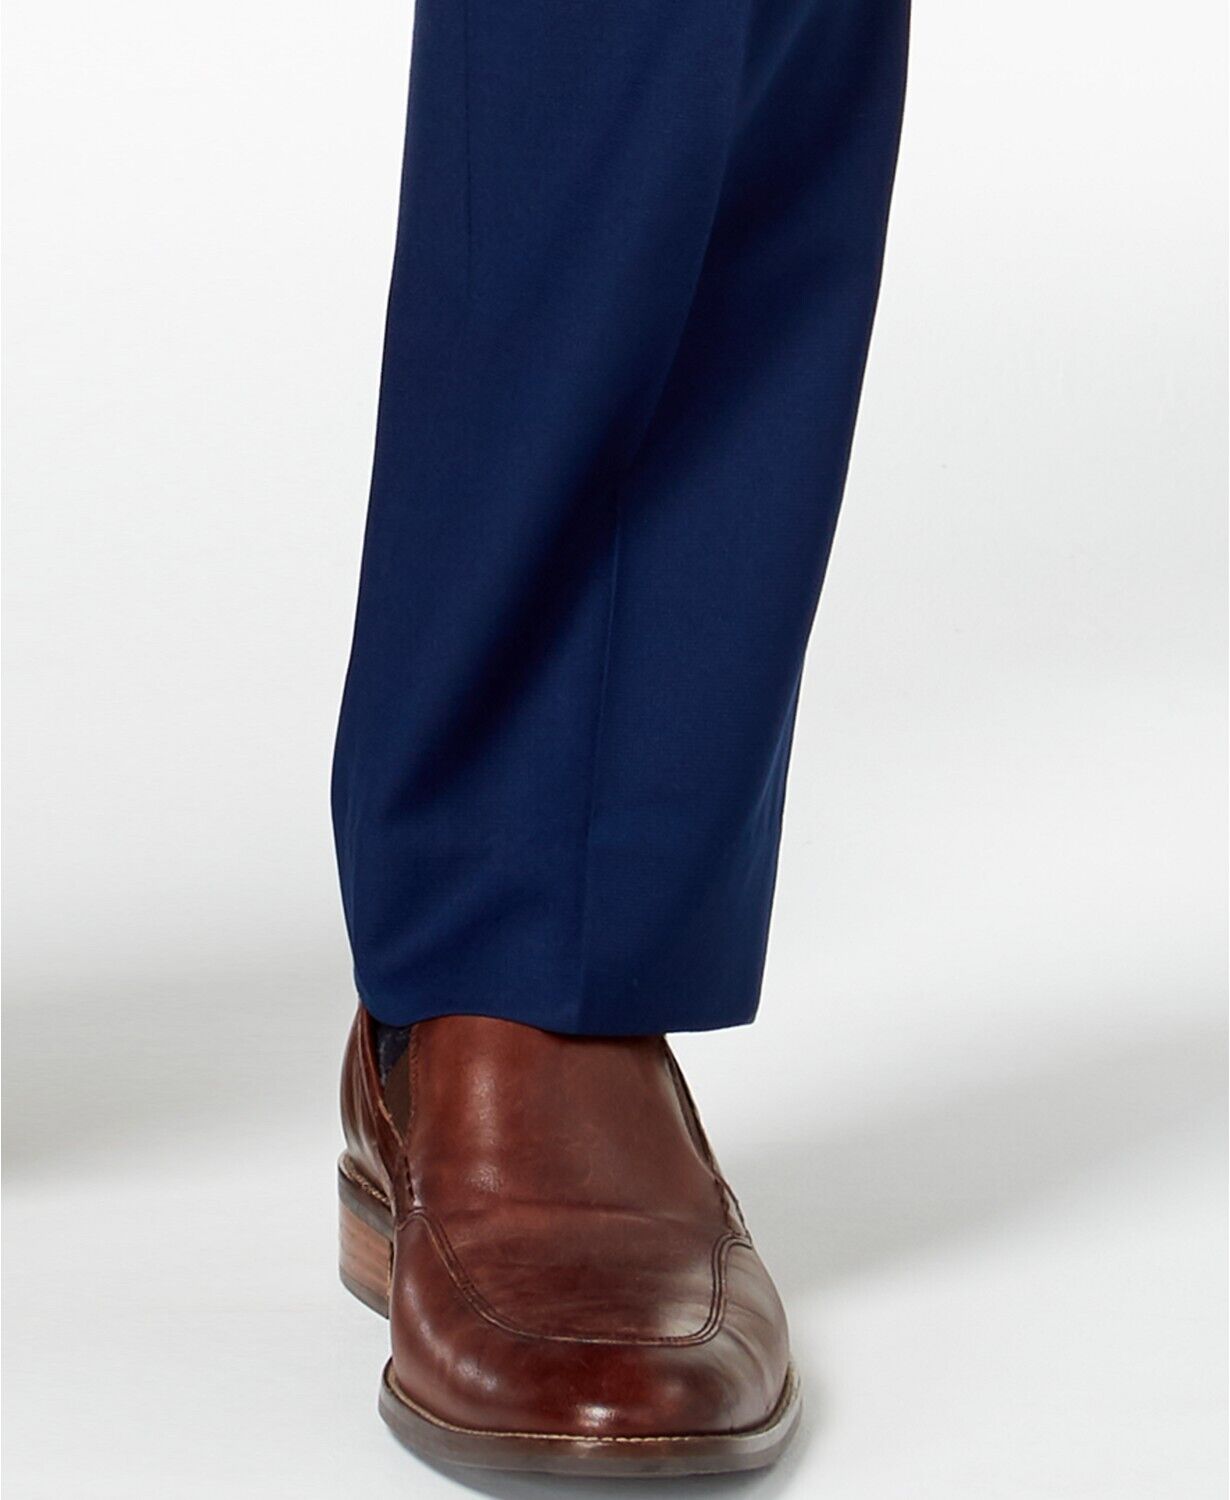 Kenneth Cole Mens Blue Suit Dress Pants 31 x 32 Flex Slim-Fit Stretch Modern